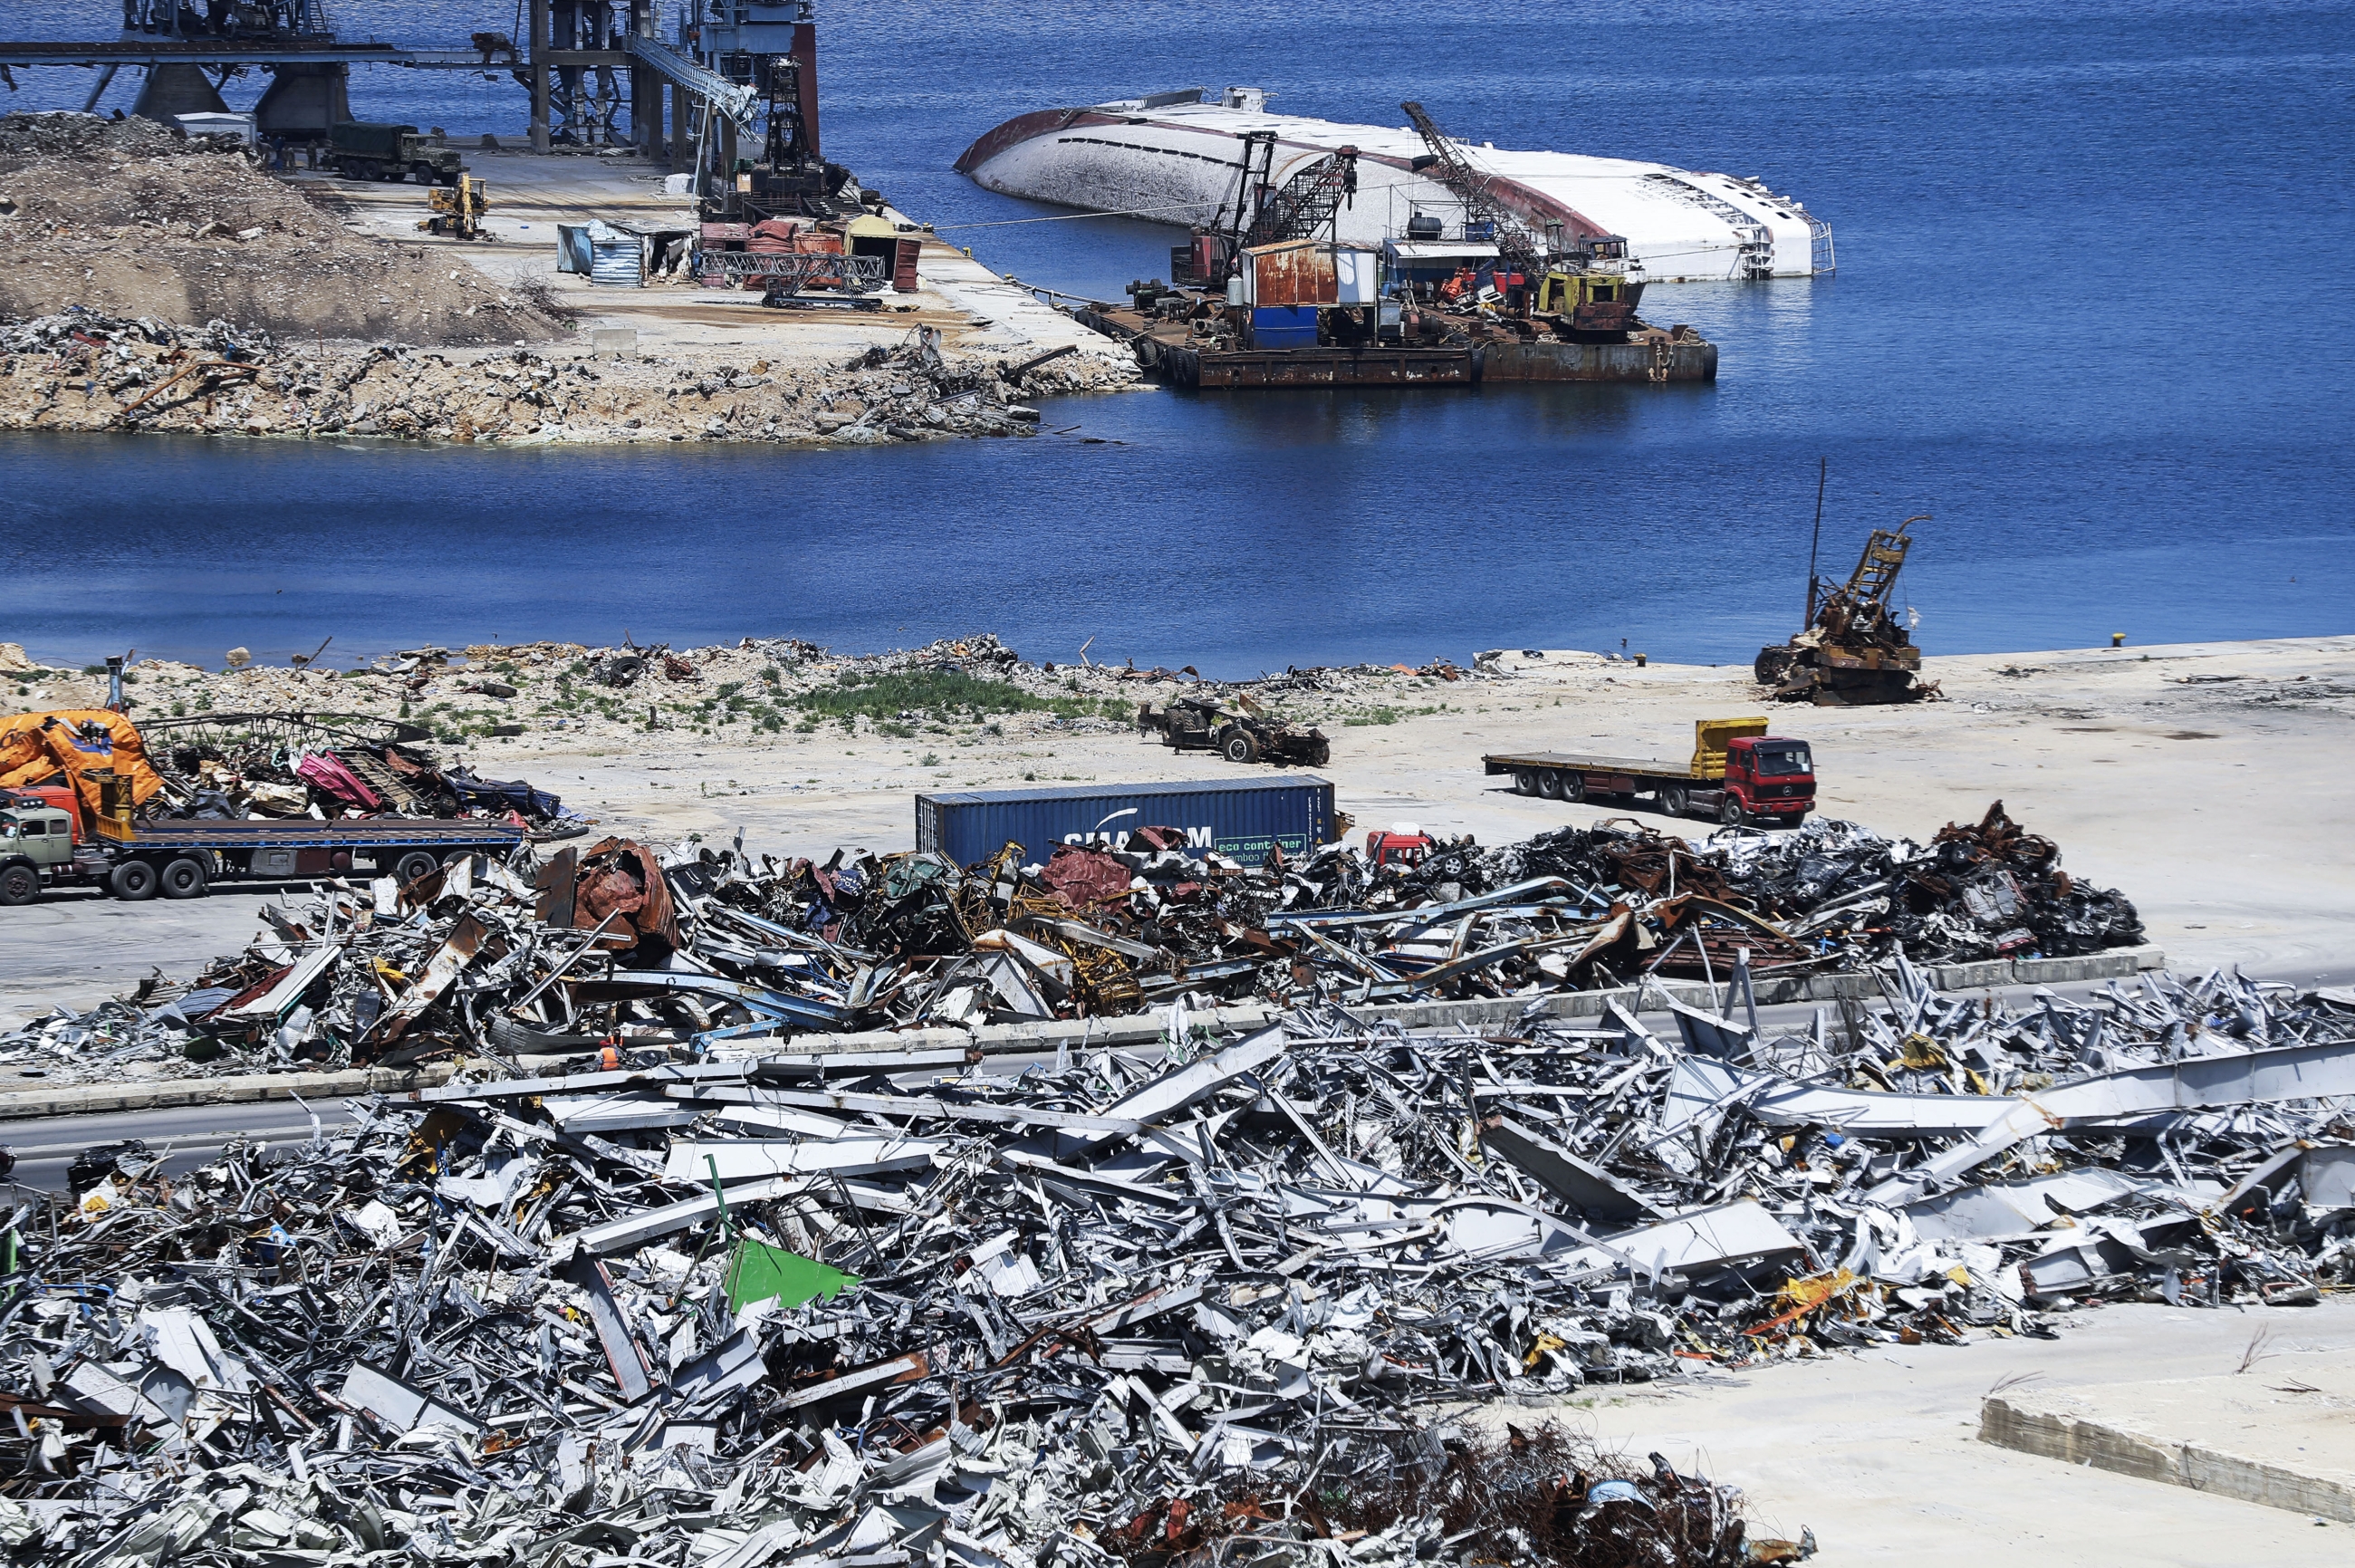 Une photo montre des tas de ferraille provenant des décombres de structures détruites dans le port de la capitale libanaise Beyrouth, le 9 avril 2021 (AFP/Joseph Eid)